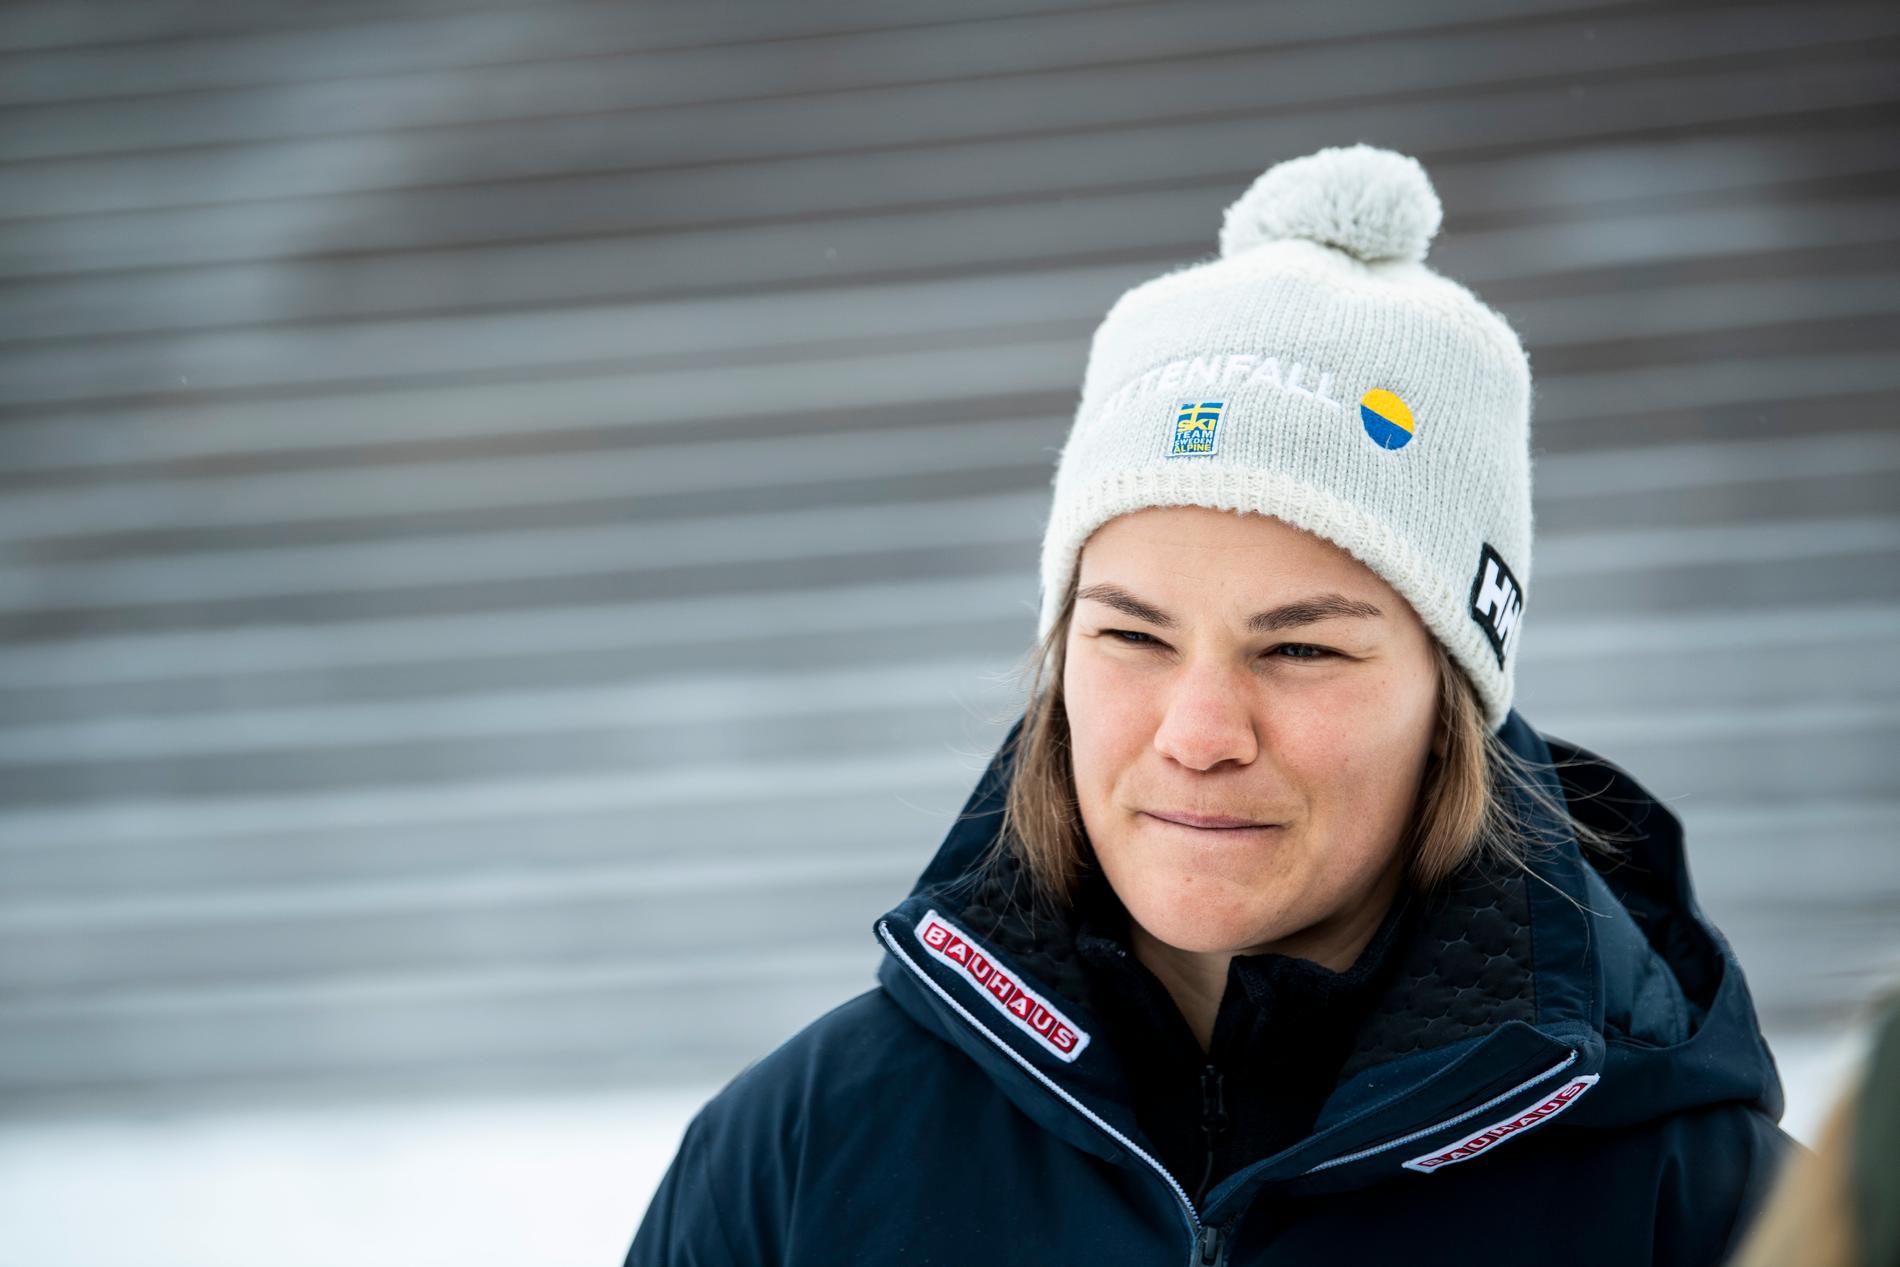 ÅRE 2020-03-11 Alpina skidåkaren Anna Swenn-Larsson inför säsongens sista tävling i världscupen som inleds med parallellslalom i Åre. Foto: Pontus Lundahl / TT / kod 10050